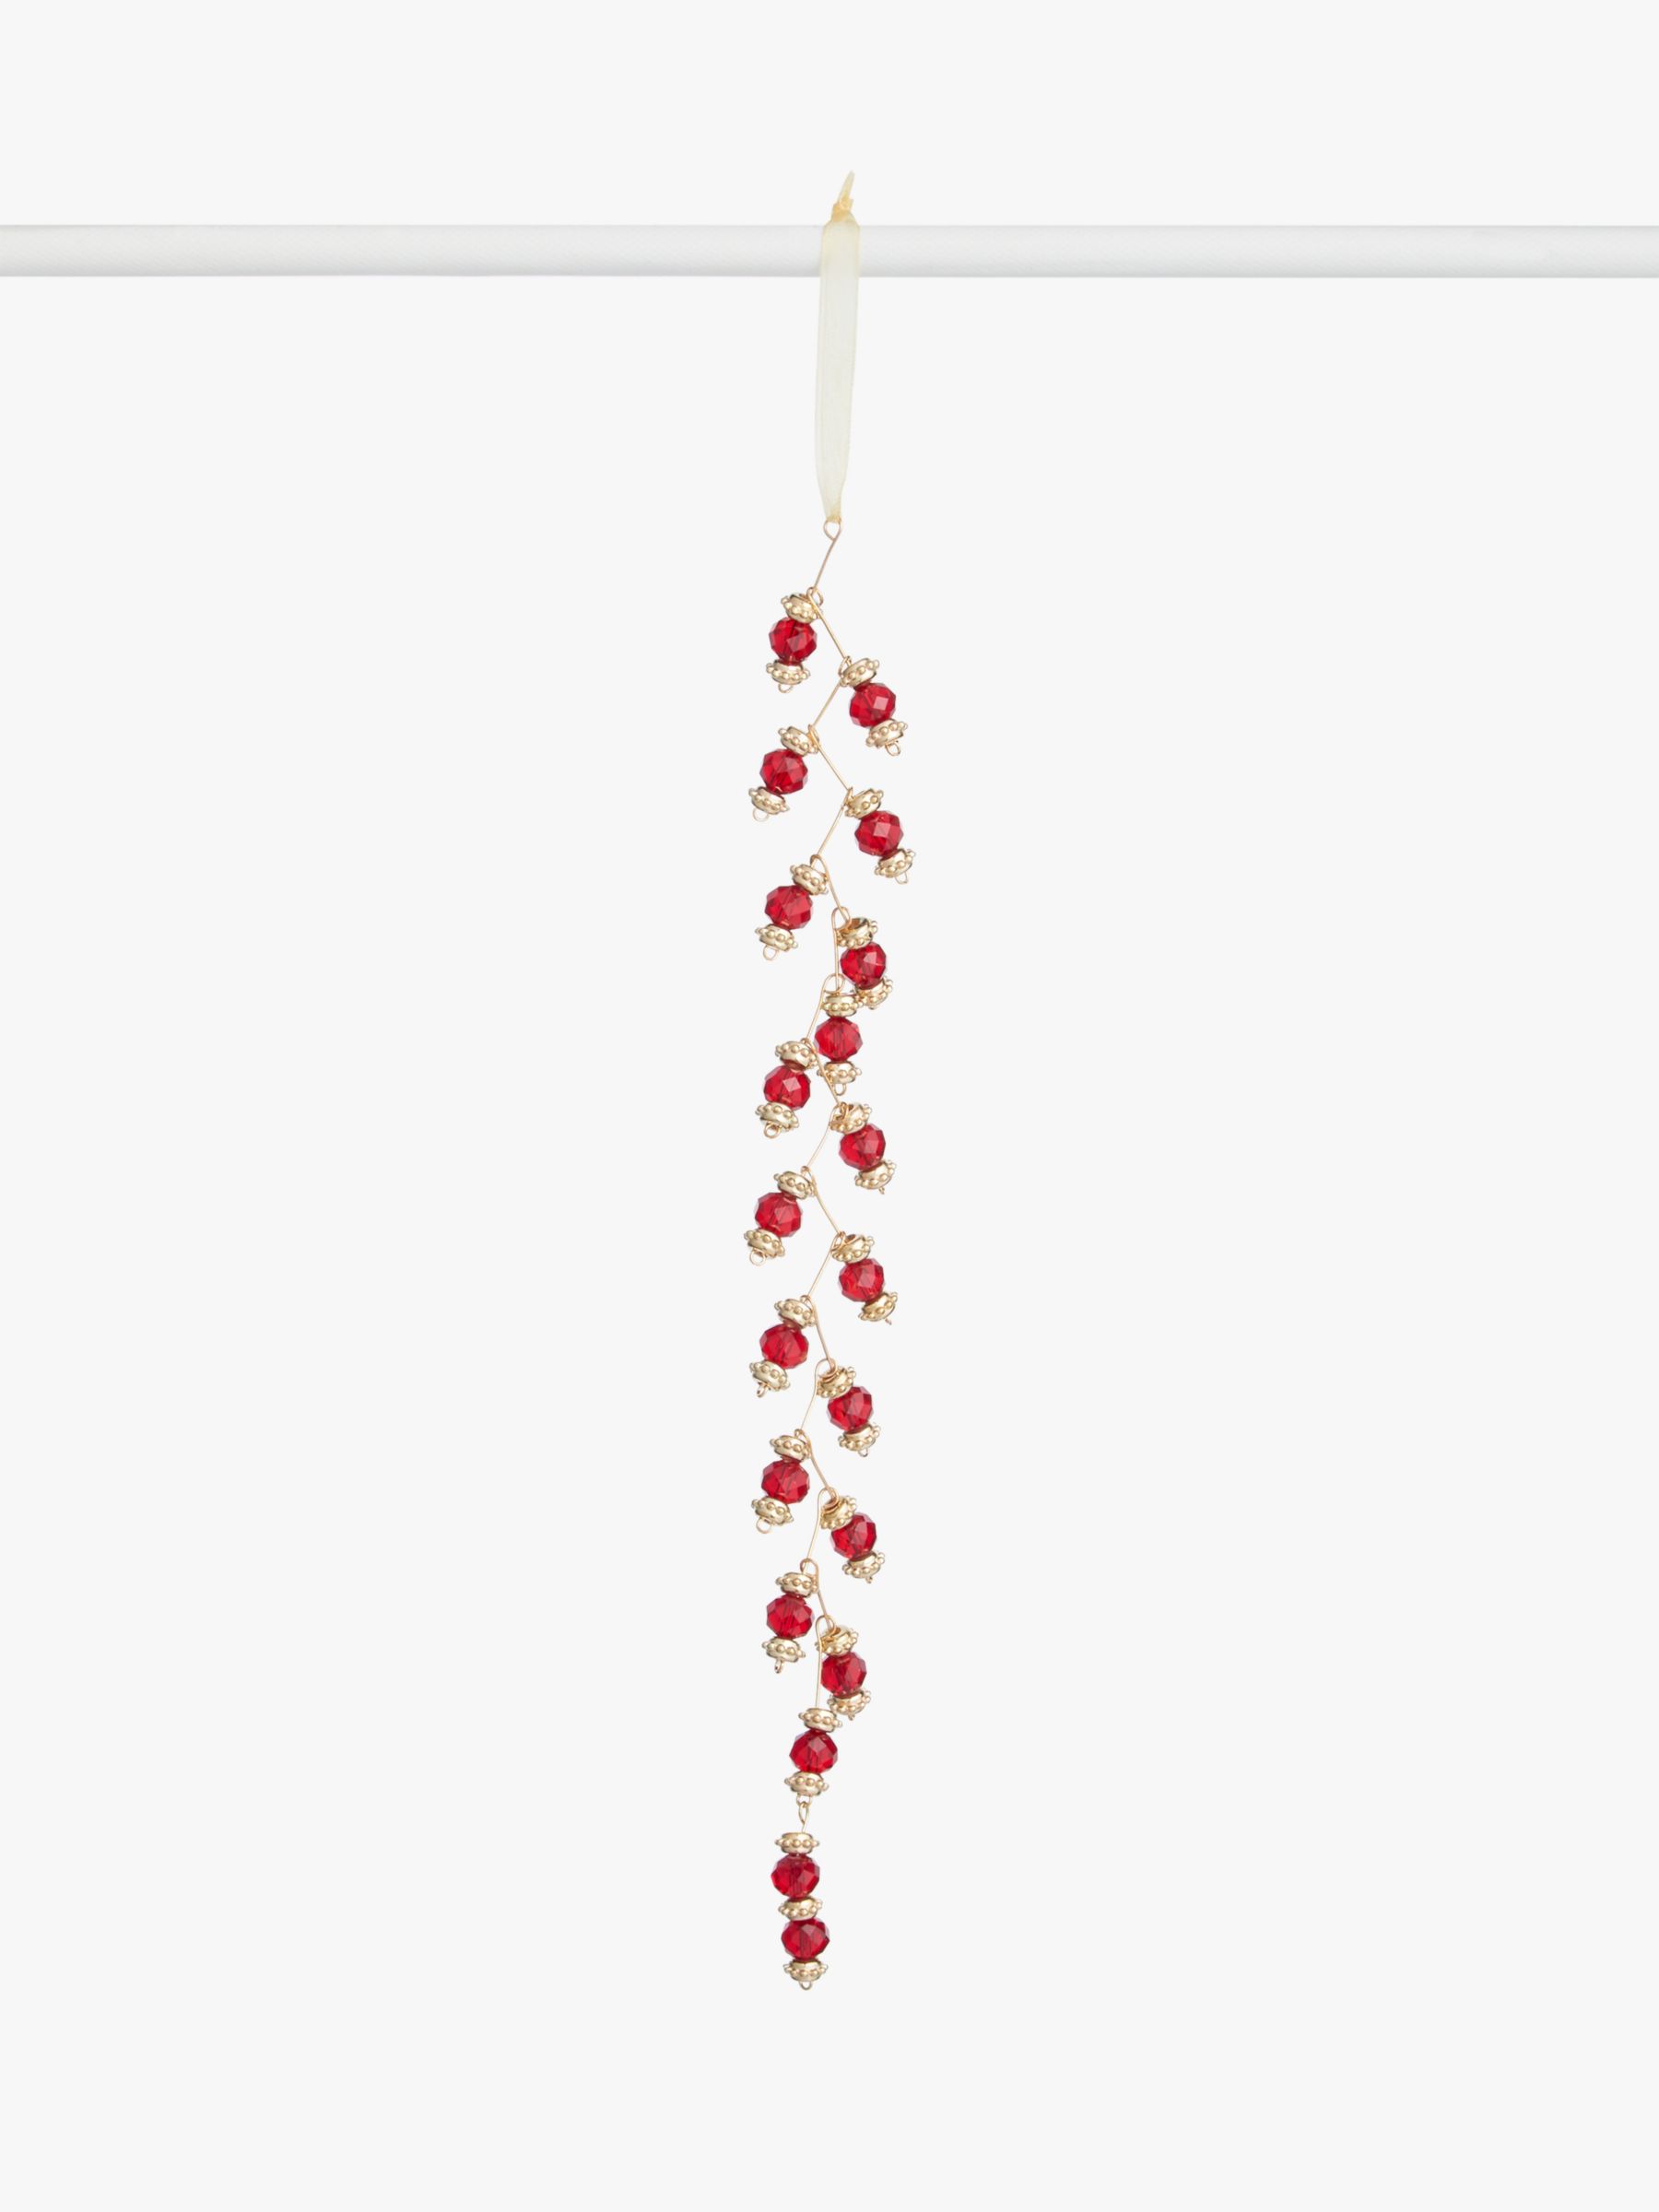 hanging beads